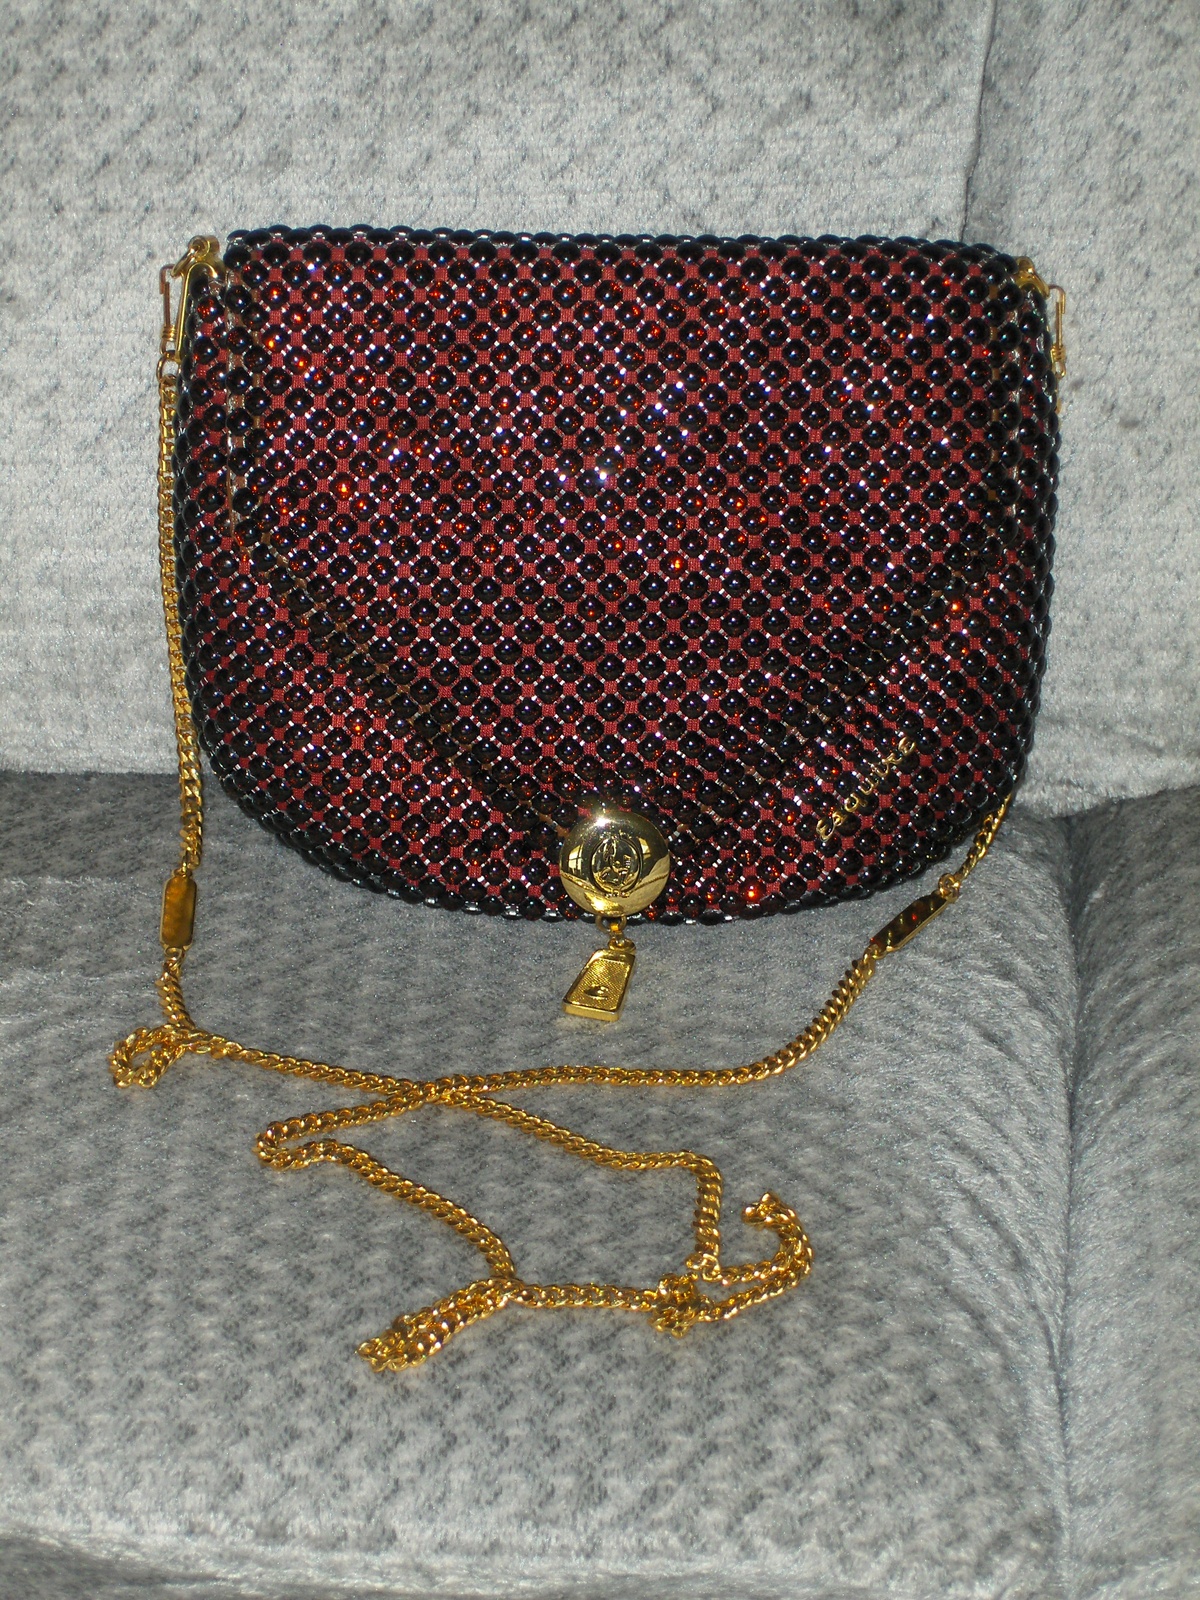 Esquire Collection Shoulder Bag Metallic Bead Purse Red Handbag Tote ...